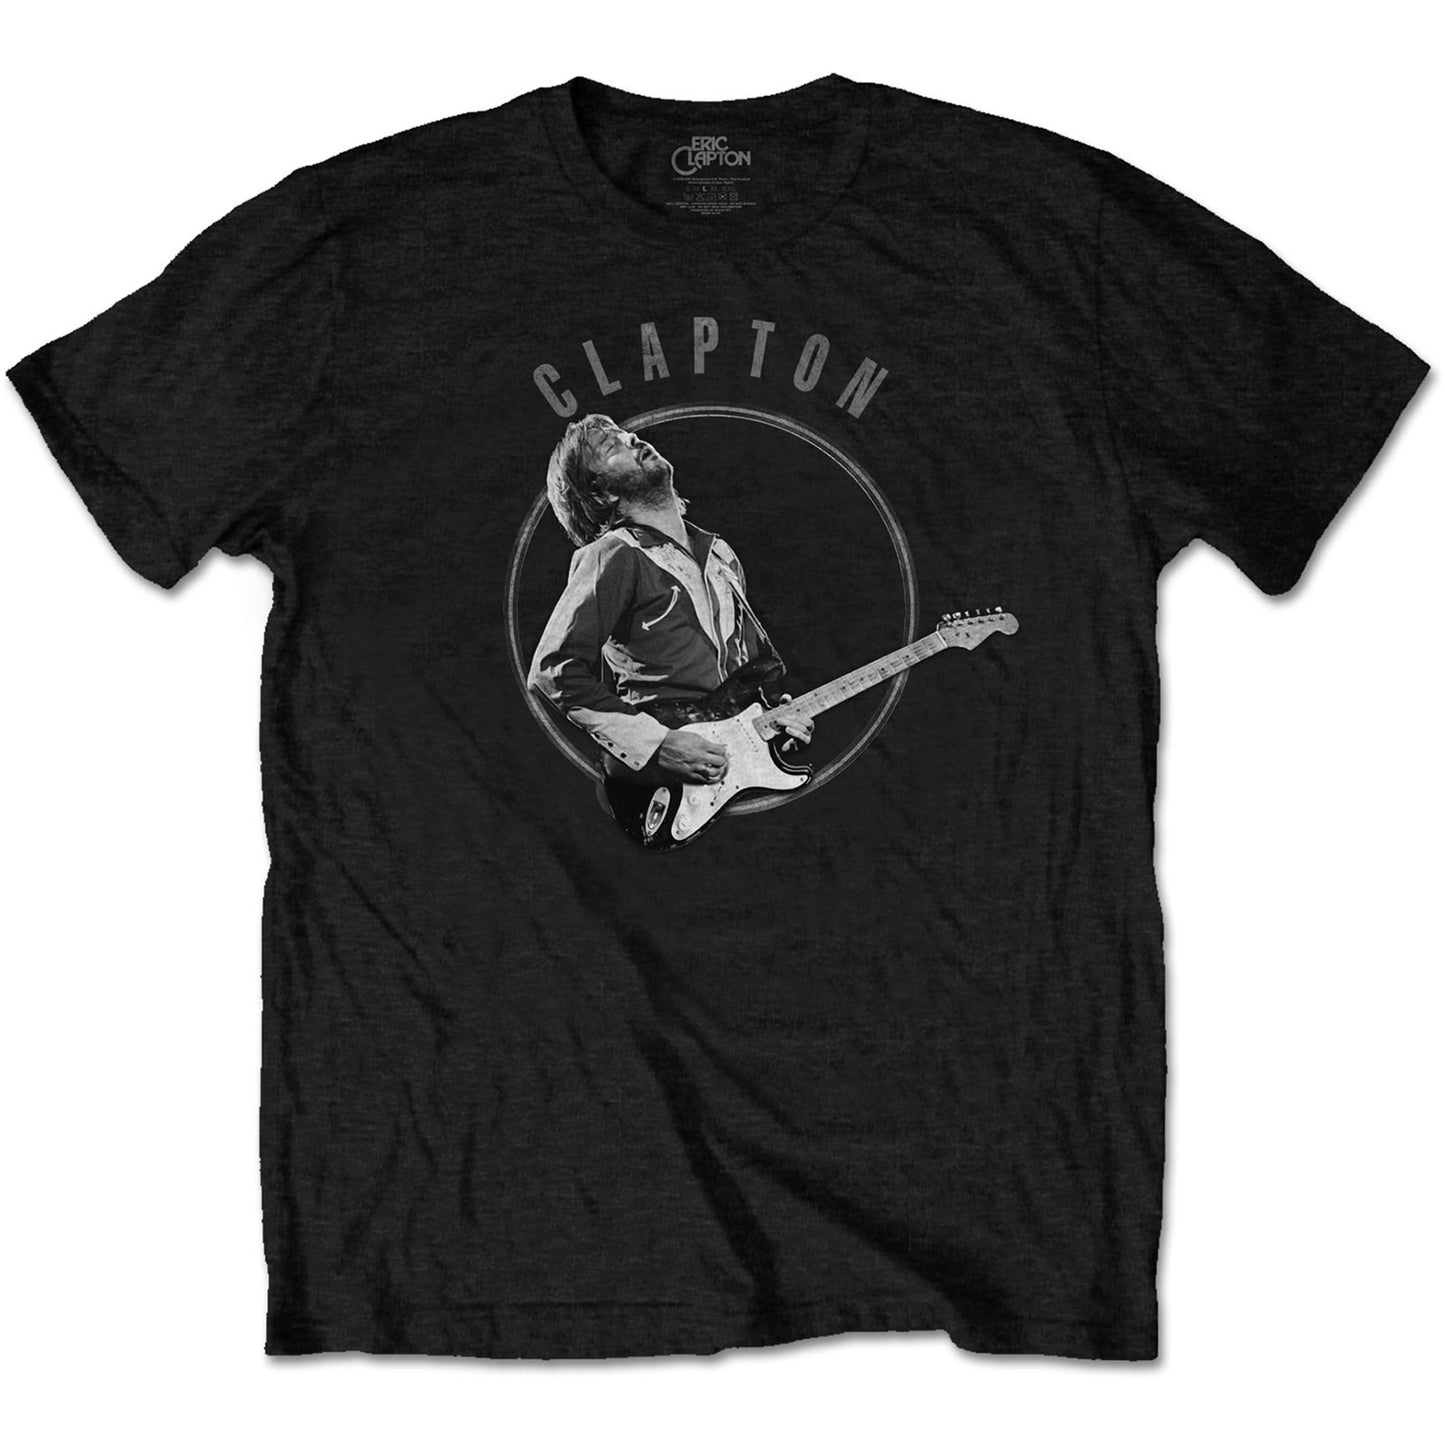 Eric Clapton T-Shirt: Vintage Photo